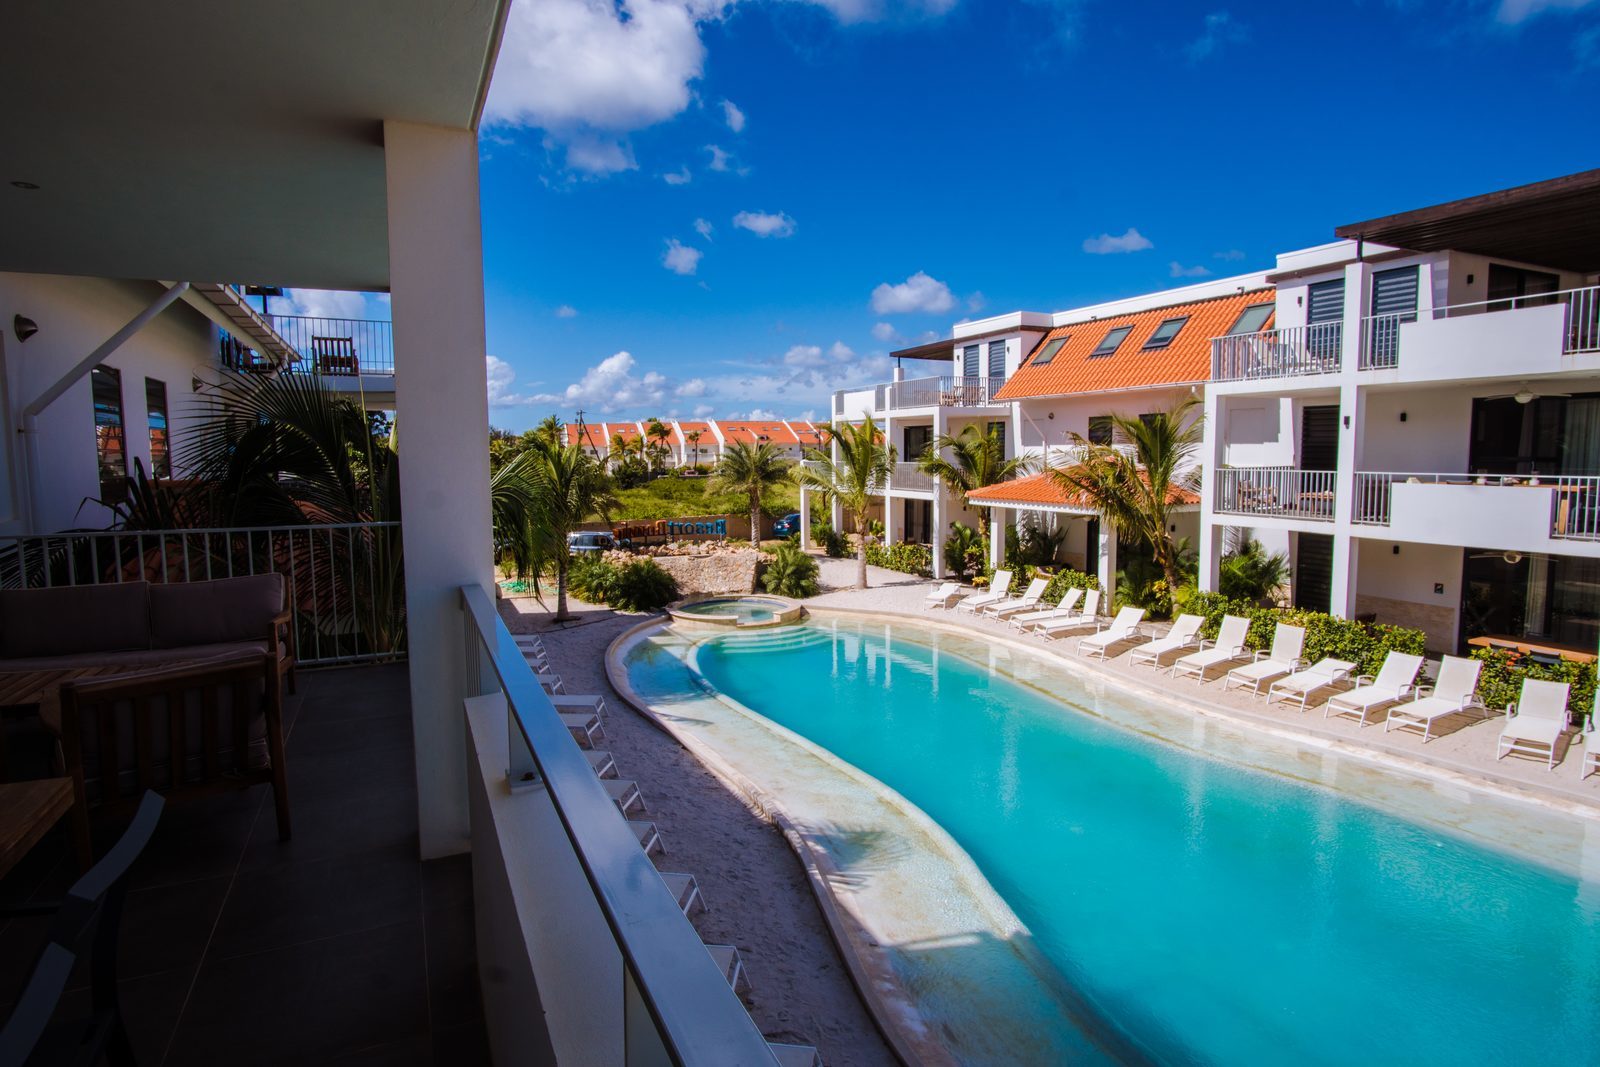 Elk appartement van Resort Bonaire beschikt over een terras waar u kan uitkijken op het zwembad.